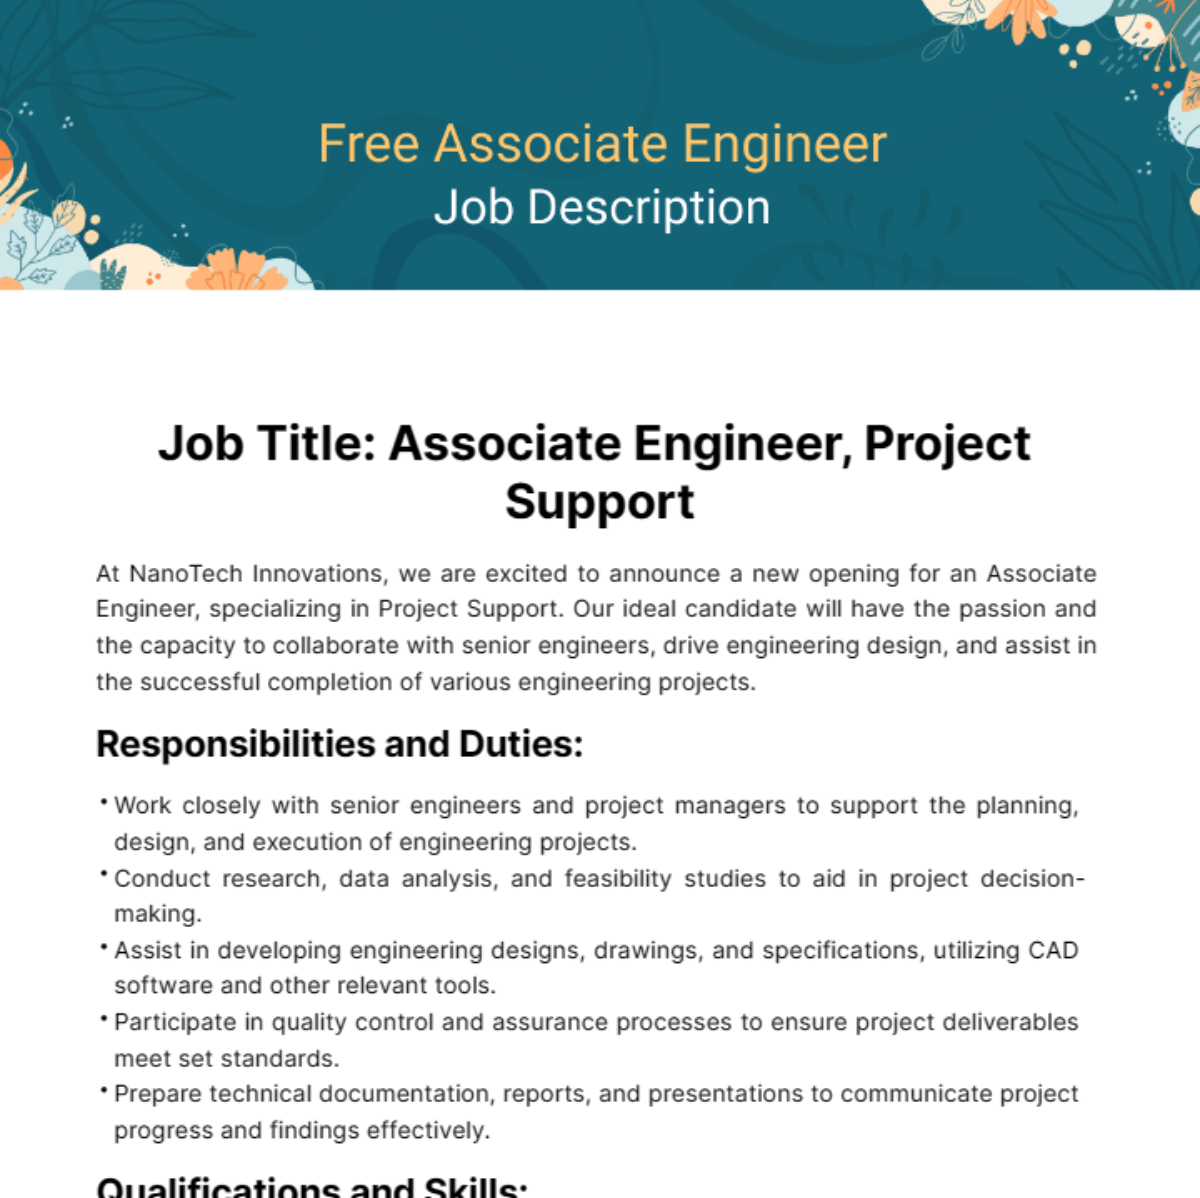 Free Associate Engineer Job Description Template